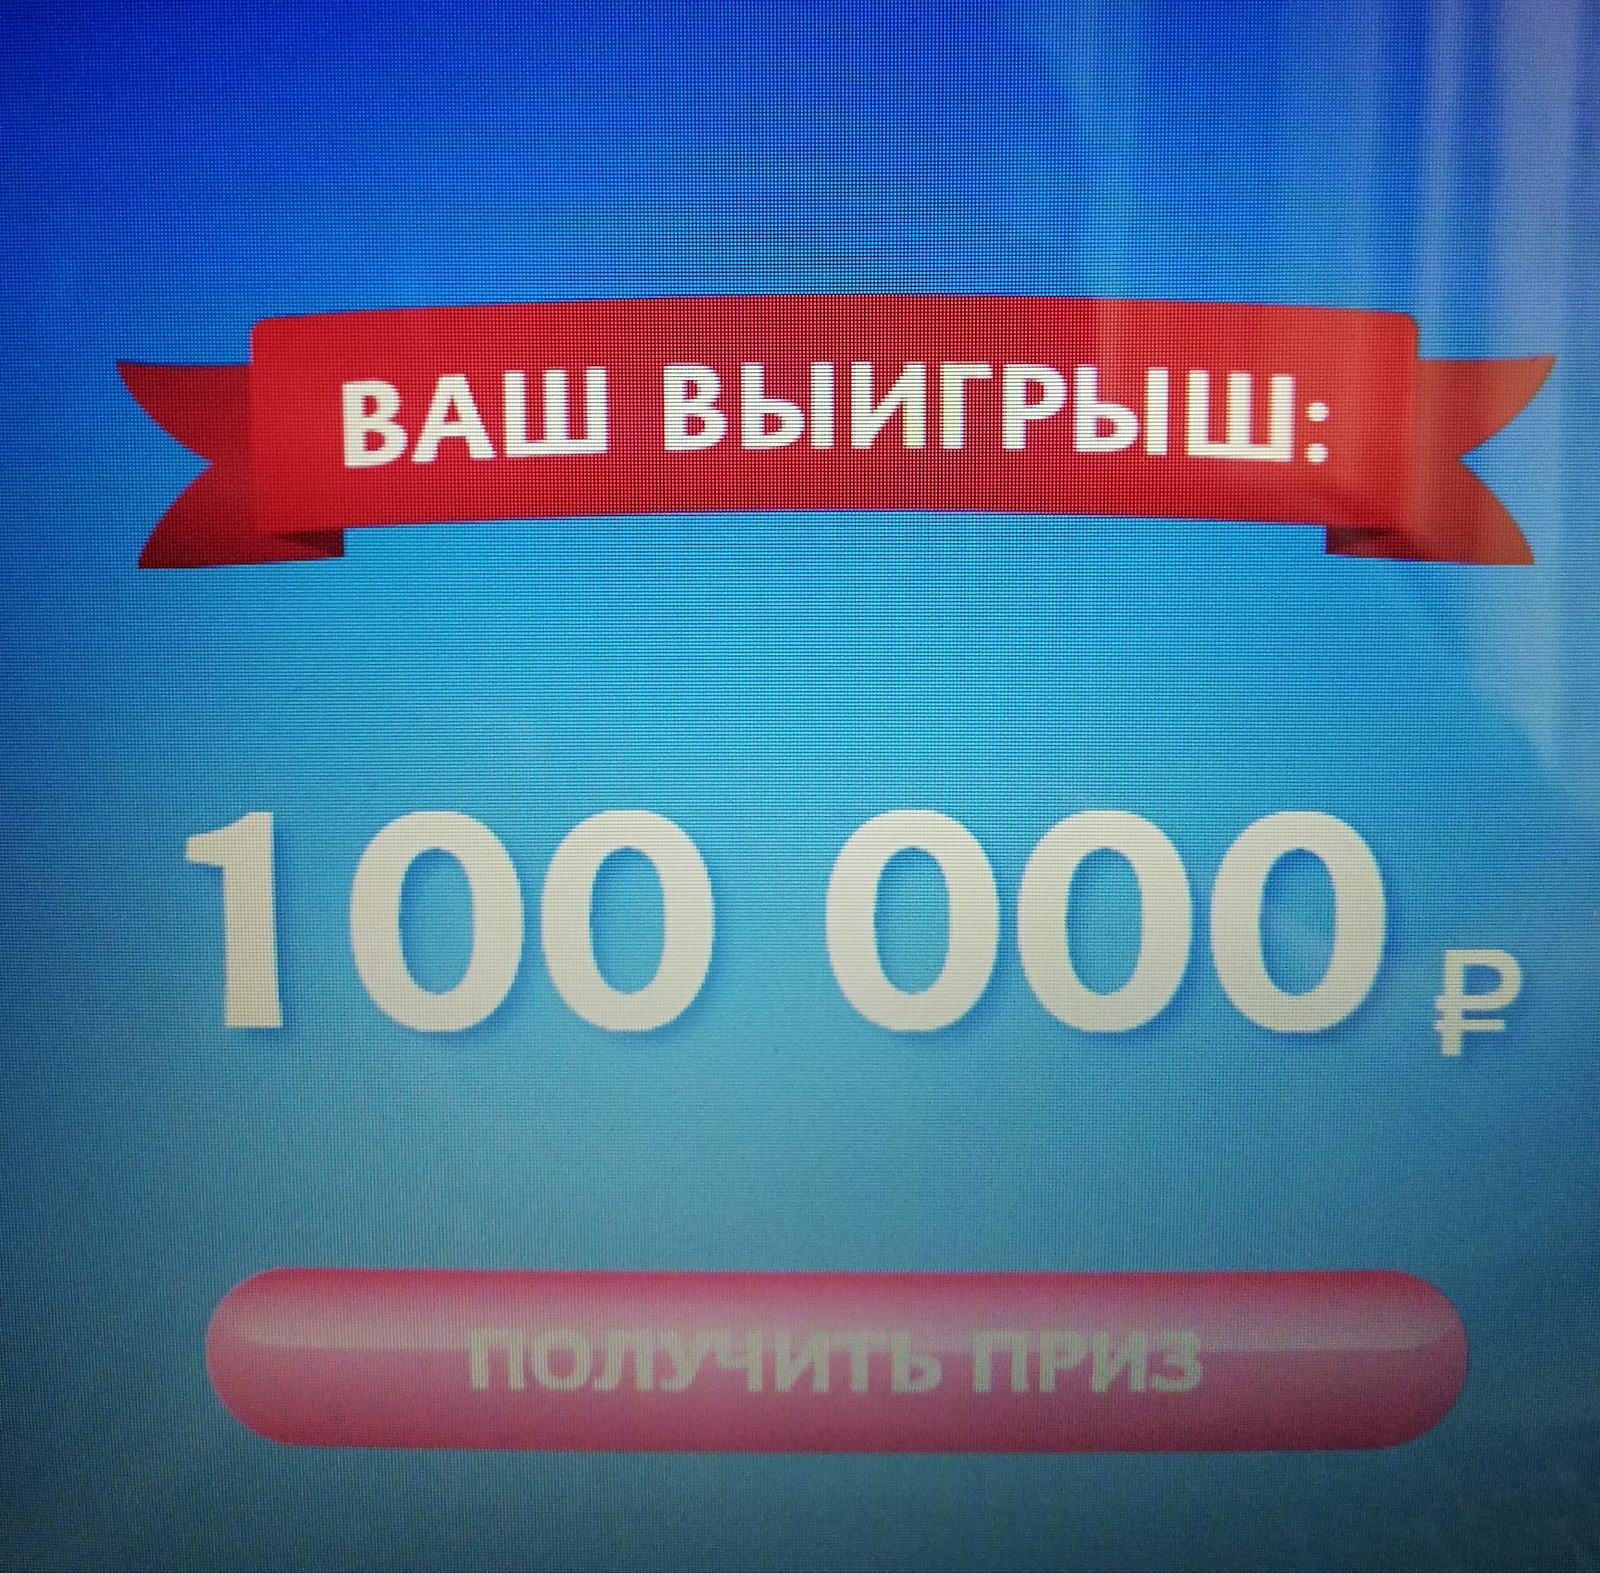 Р 100.000. Вы выиграли 100 рублей. Приз 100000 рублей. Приз 100 рублей. Вы выйграли милион рублей.